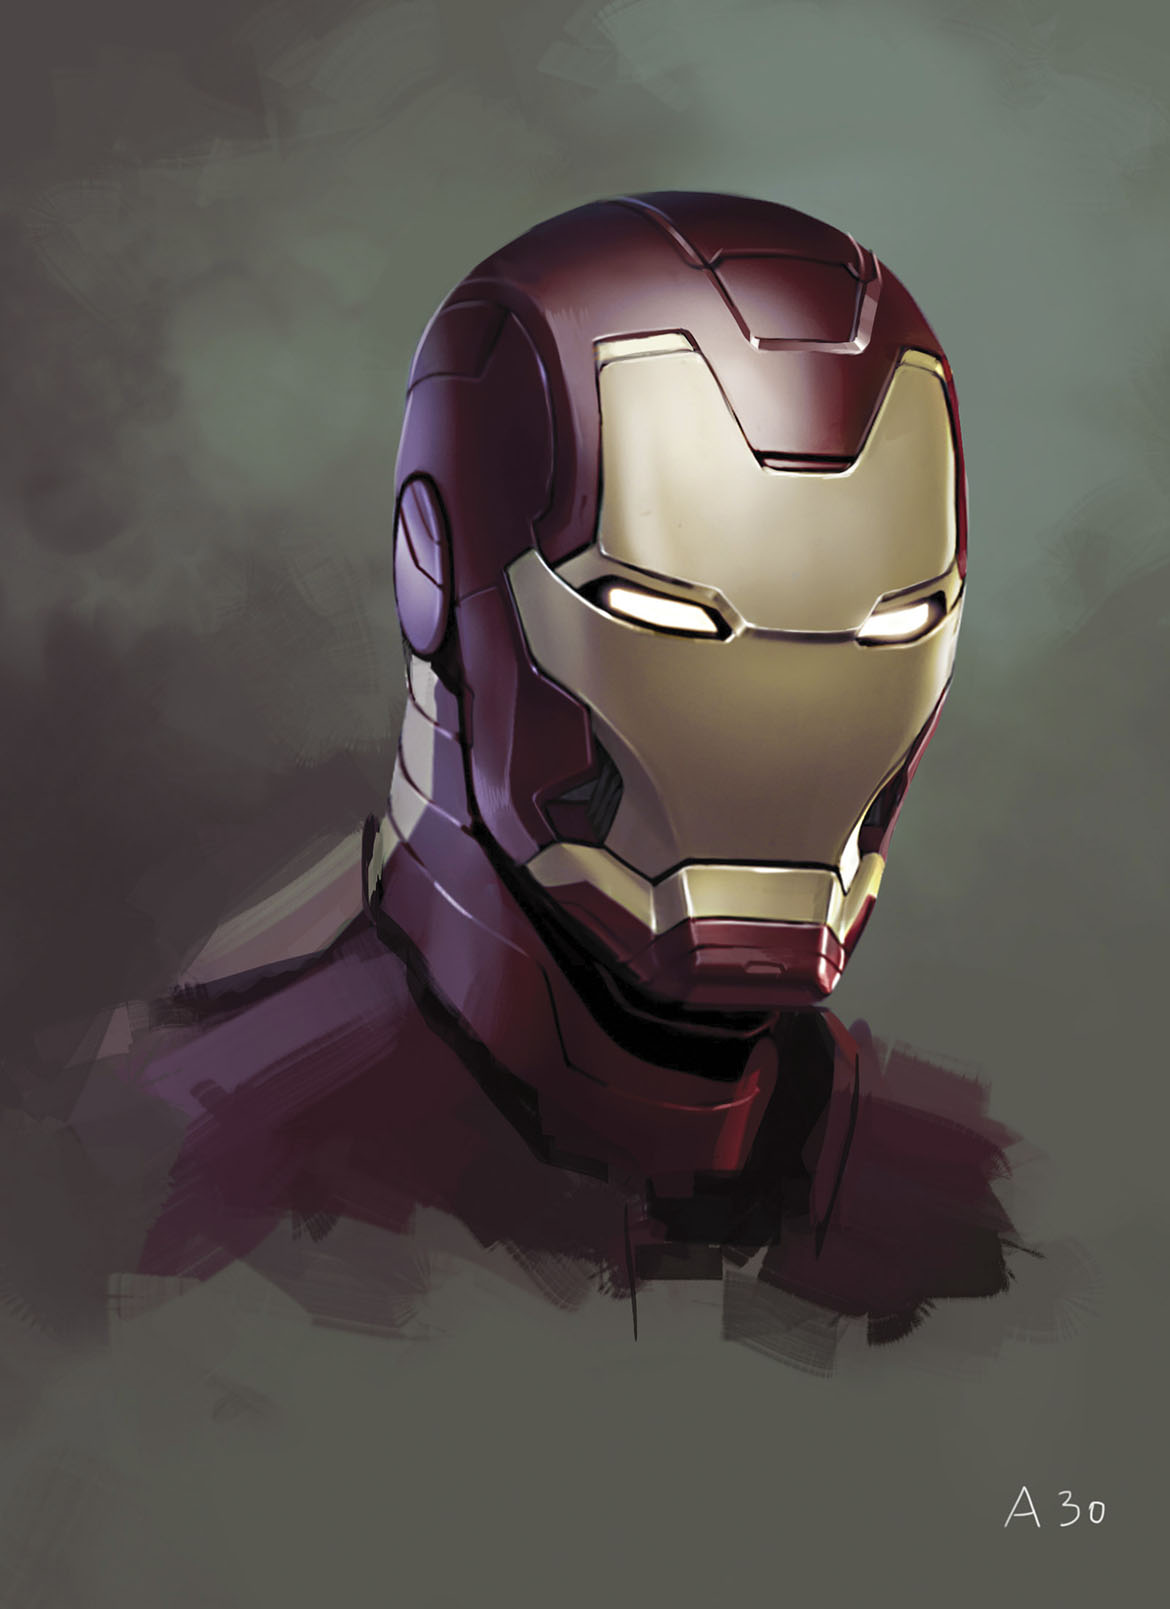 Ryan Meinerding / Head no.1 / Concept art for Iron Man 3 2013 / © 2017 MARVEL